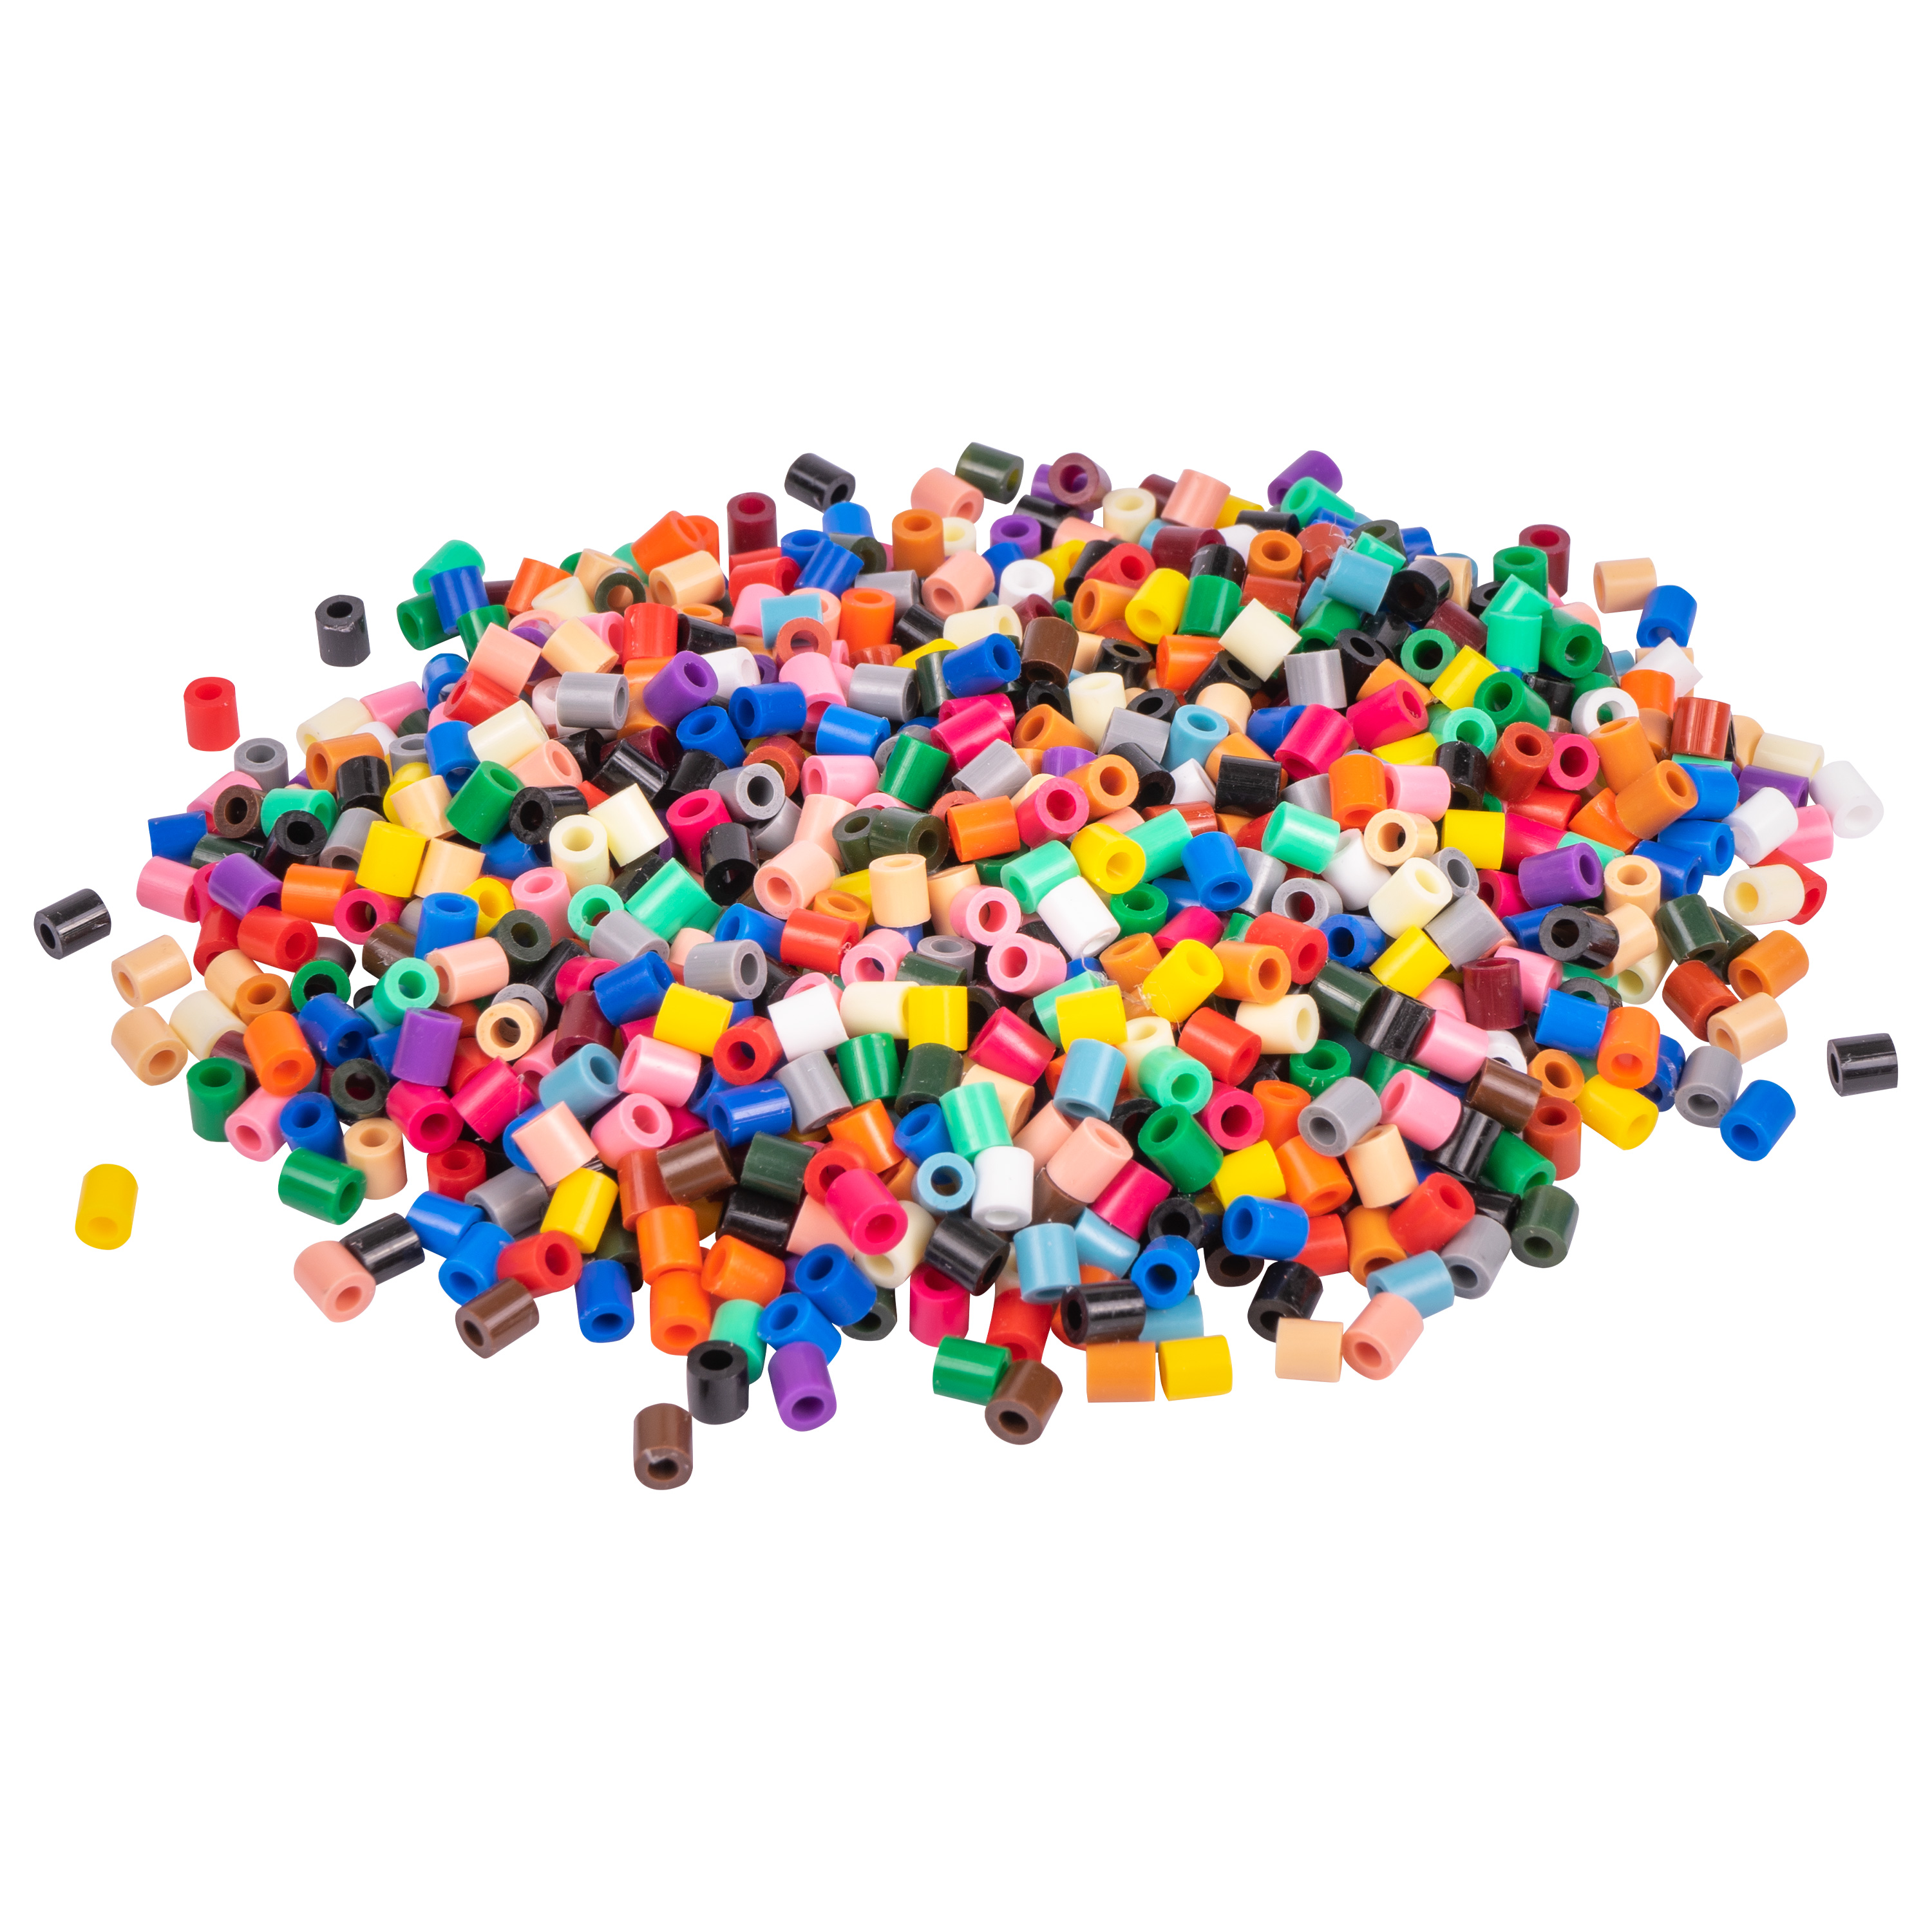 HAMA Beutel mit 6000 Bügelperlen im Volltonmix (22 Farben)